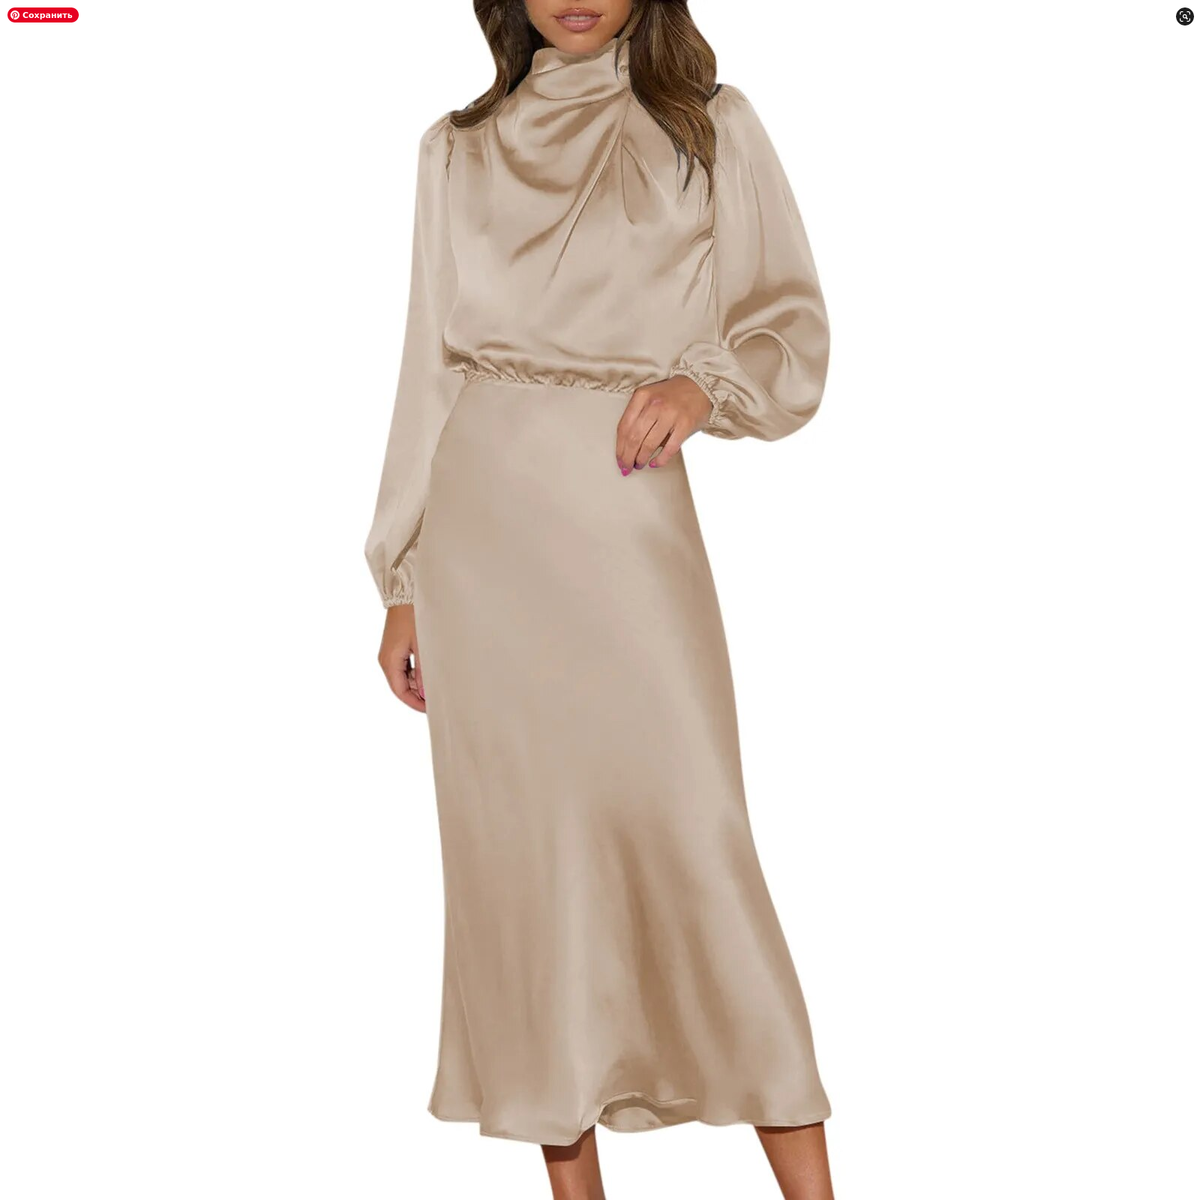 Премиум Качество: наше женское атласное вечернее платье с длинными рукавами и высоким воротом изготовлено из лучших материалов, чтобы обеспечить роскошное и комфортное ношение.